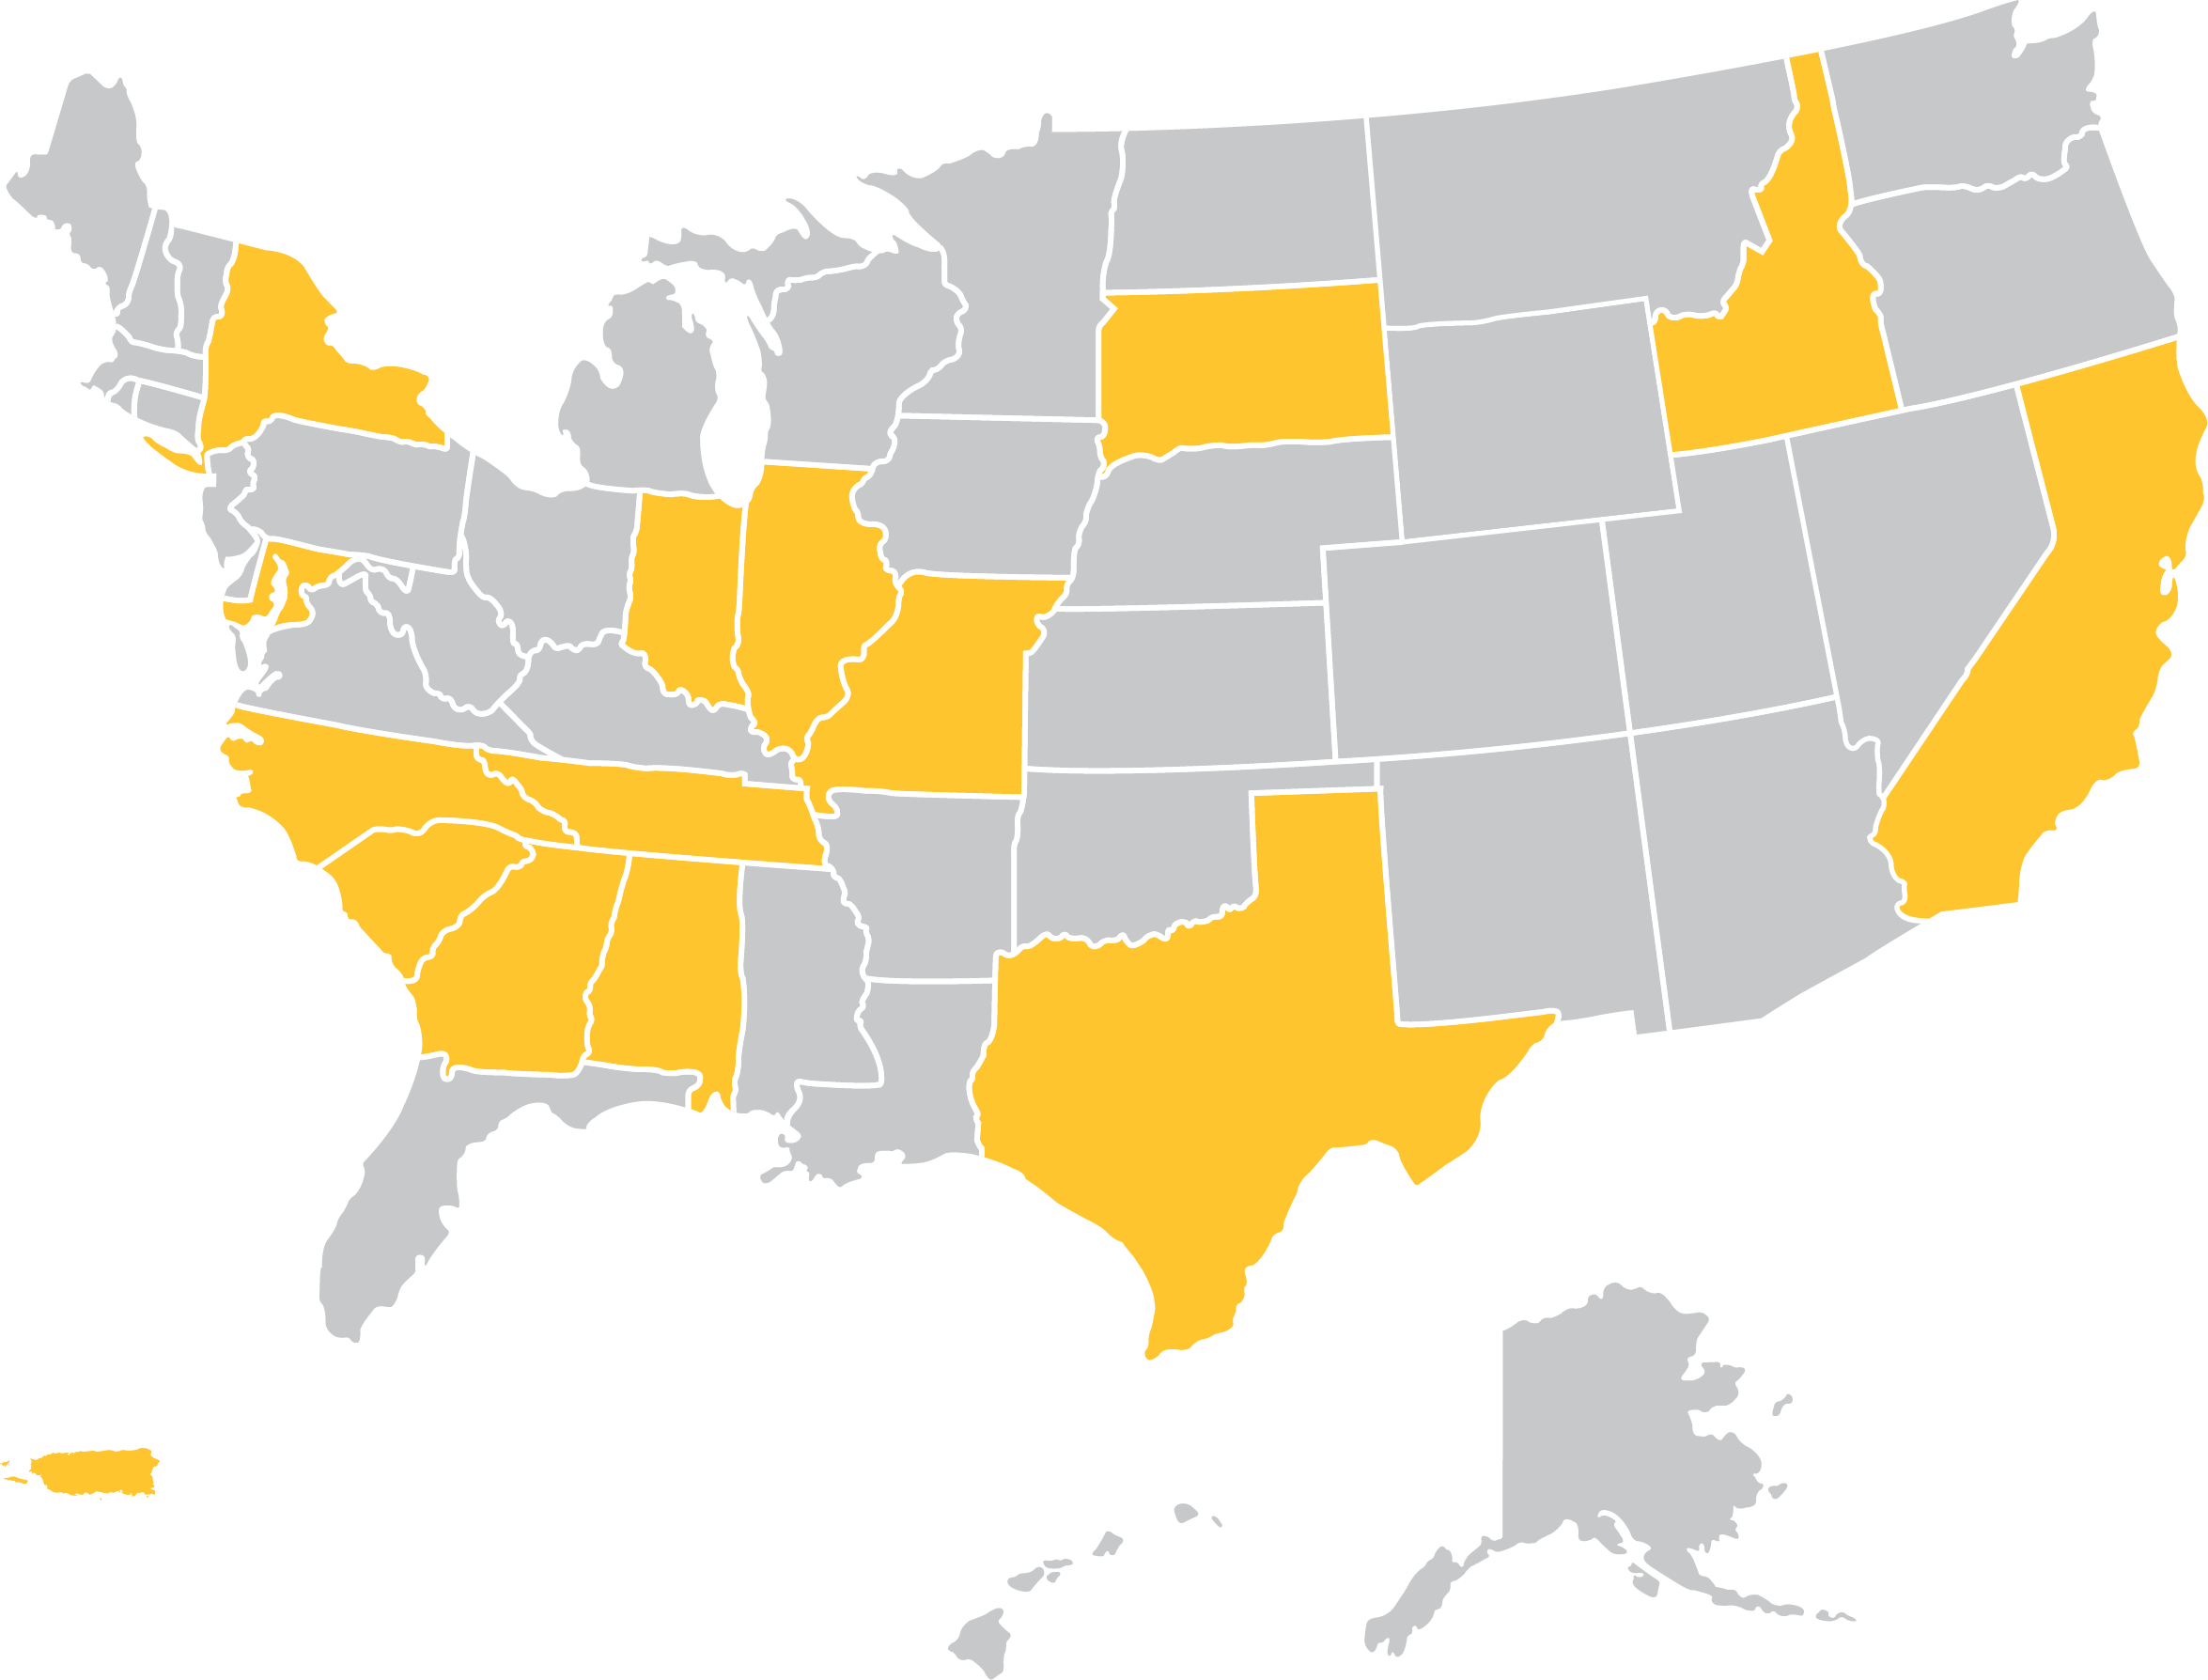 所有这些州都代表了学生来自哪里